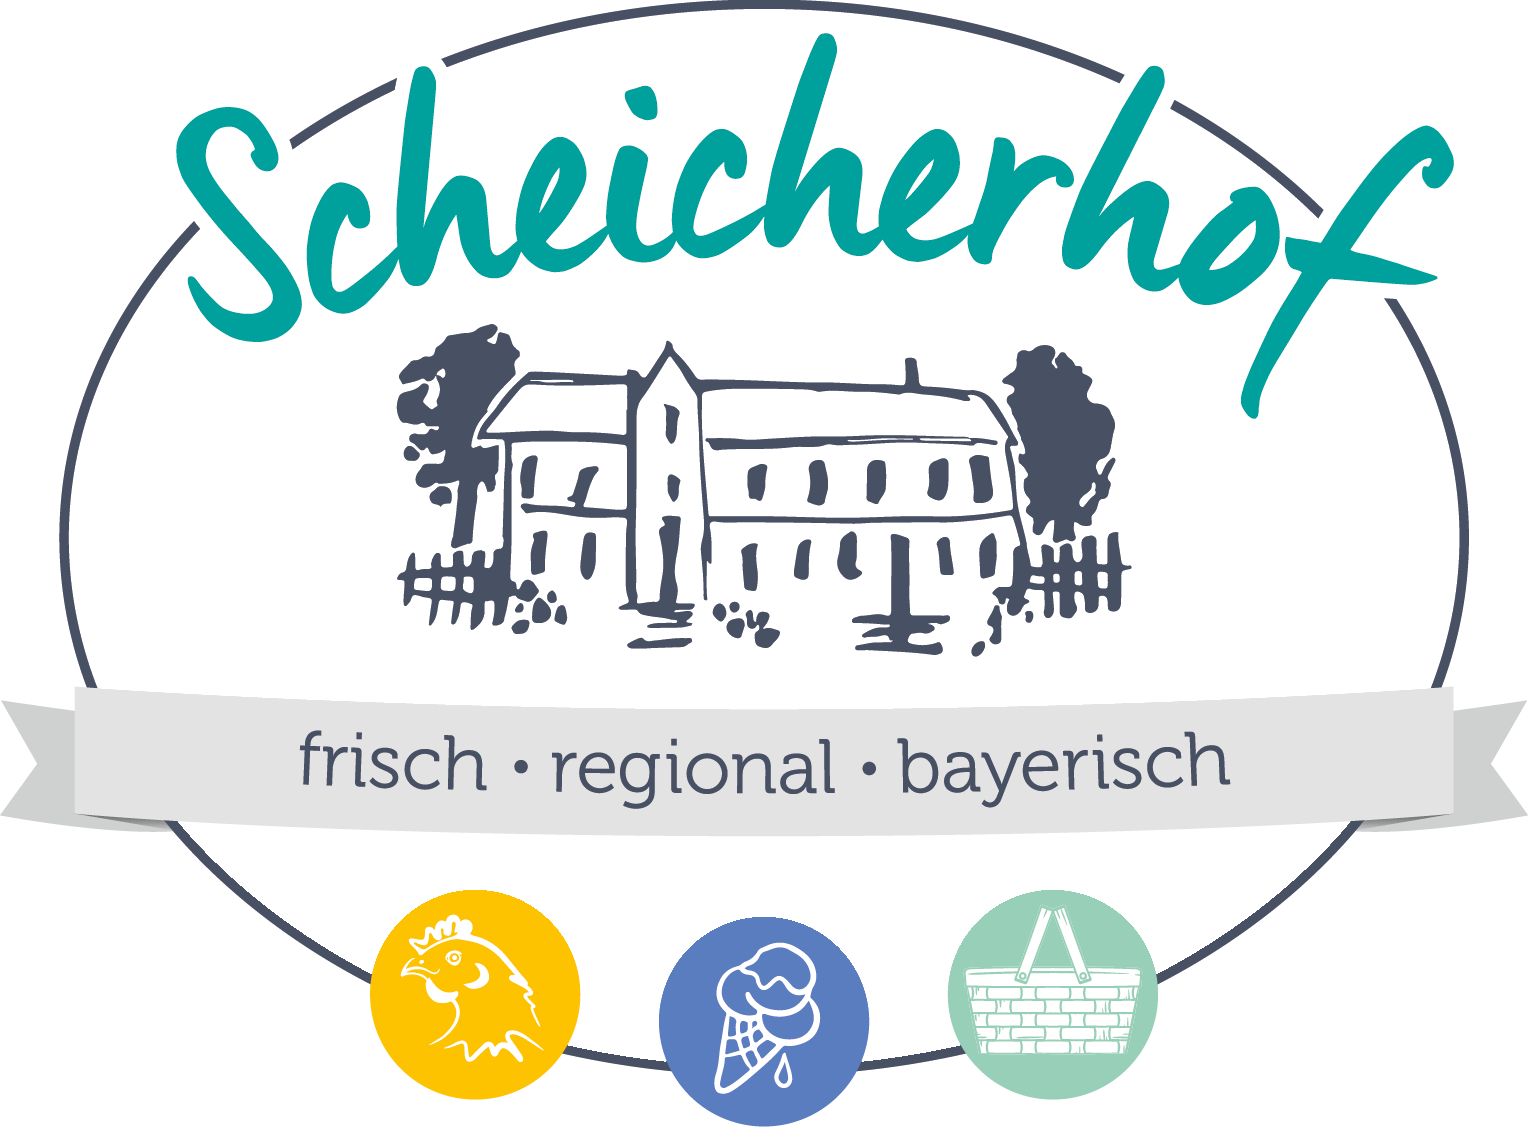 Scheicherhof